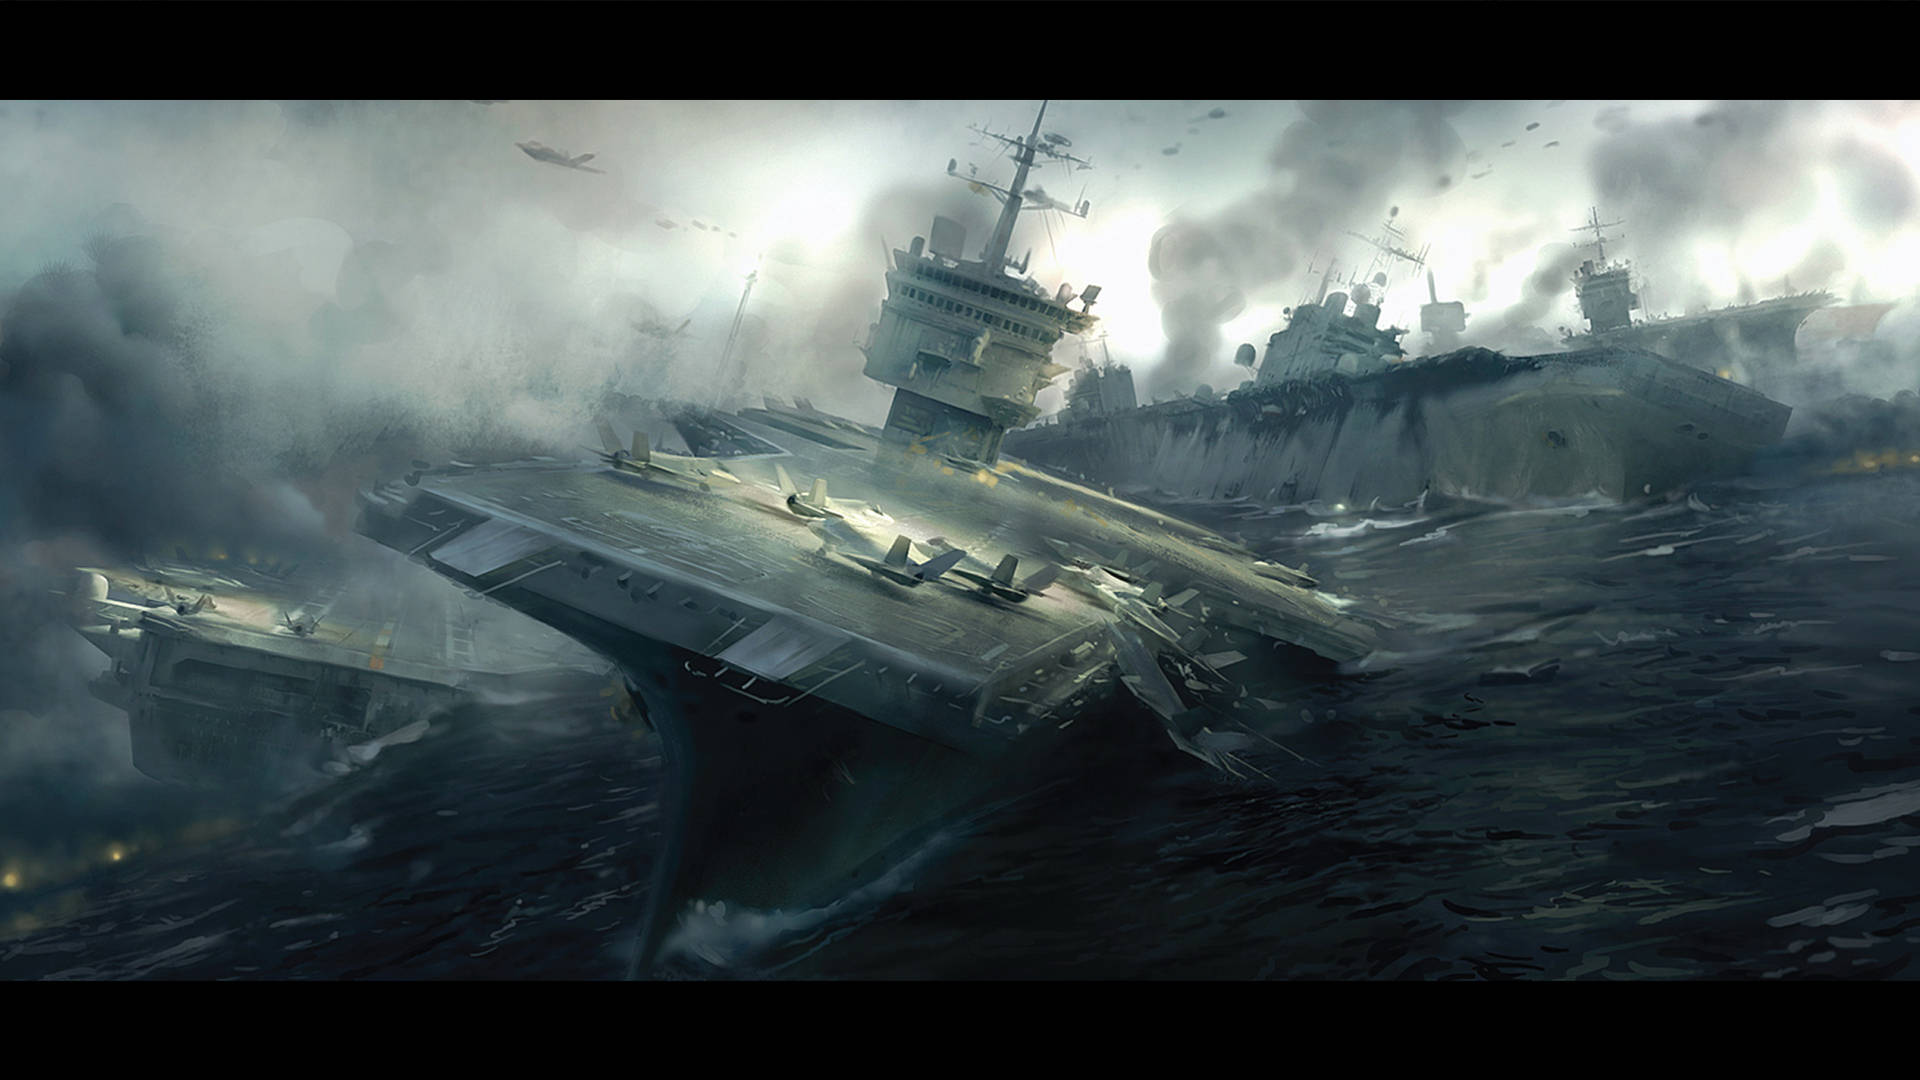 Battlefield 3 Aircraft Carrier Scene Wallpaper